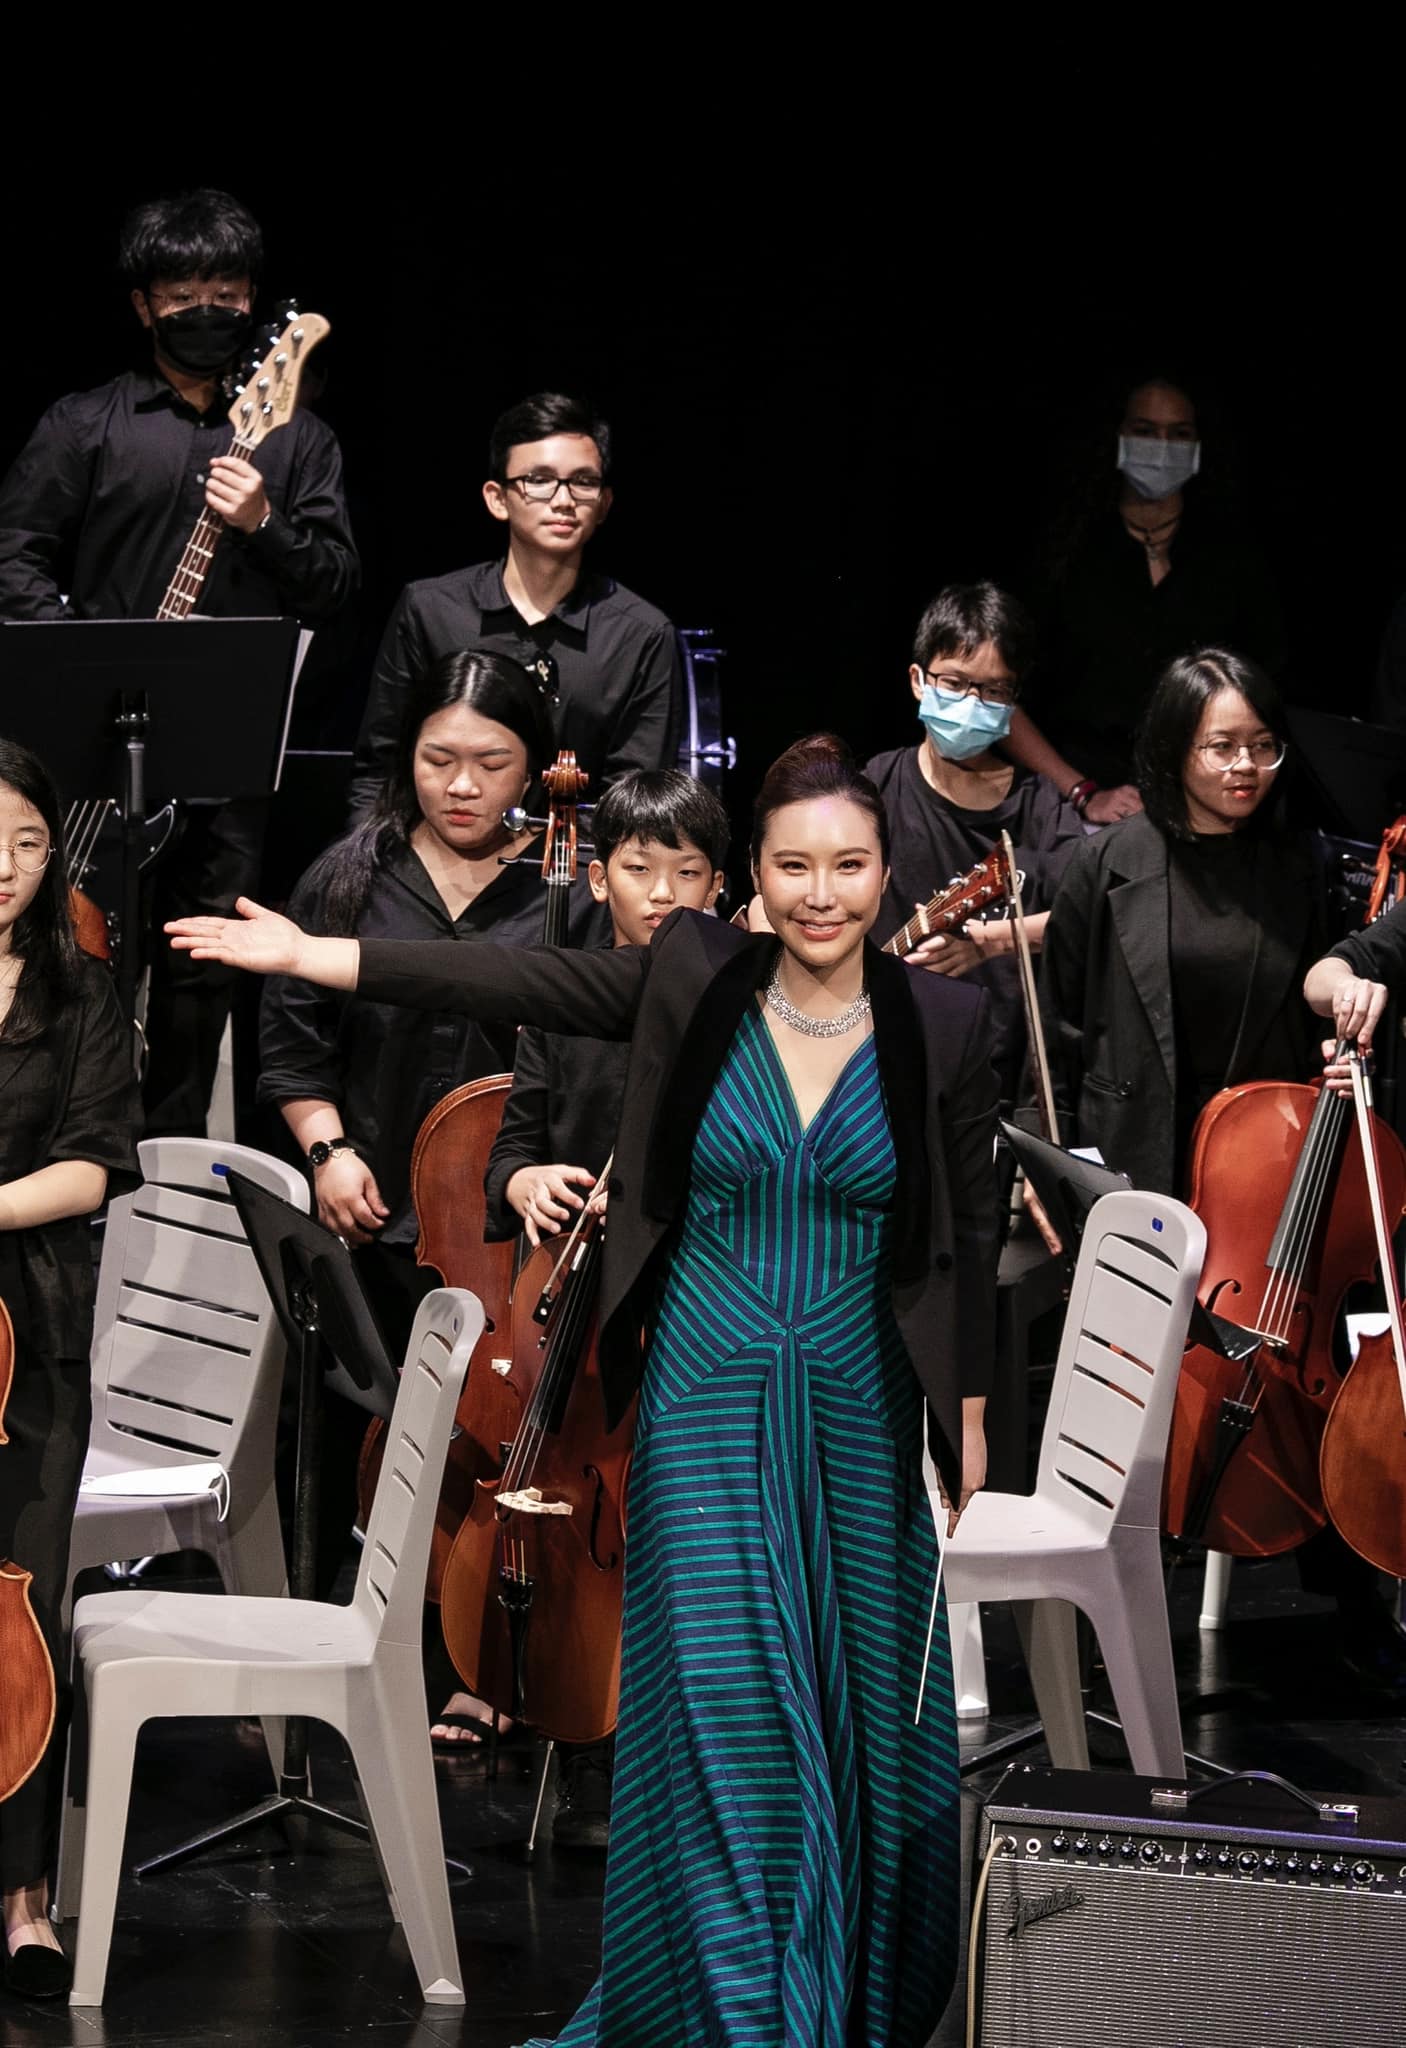 10 năm ở TP.HCM, nghệ sĩ violin Hàn Quốc miệt mài lan tỏa giá trị tích cực - Ảnh 2.